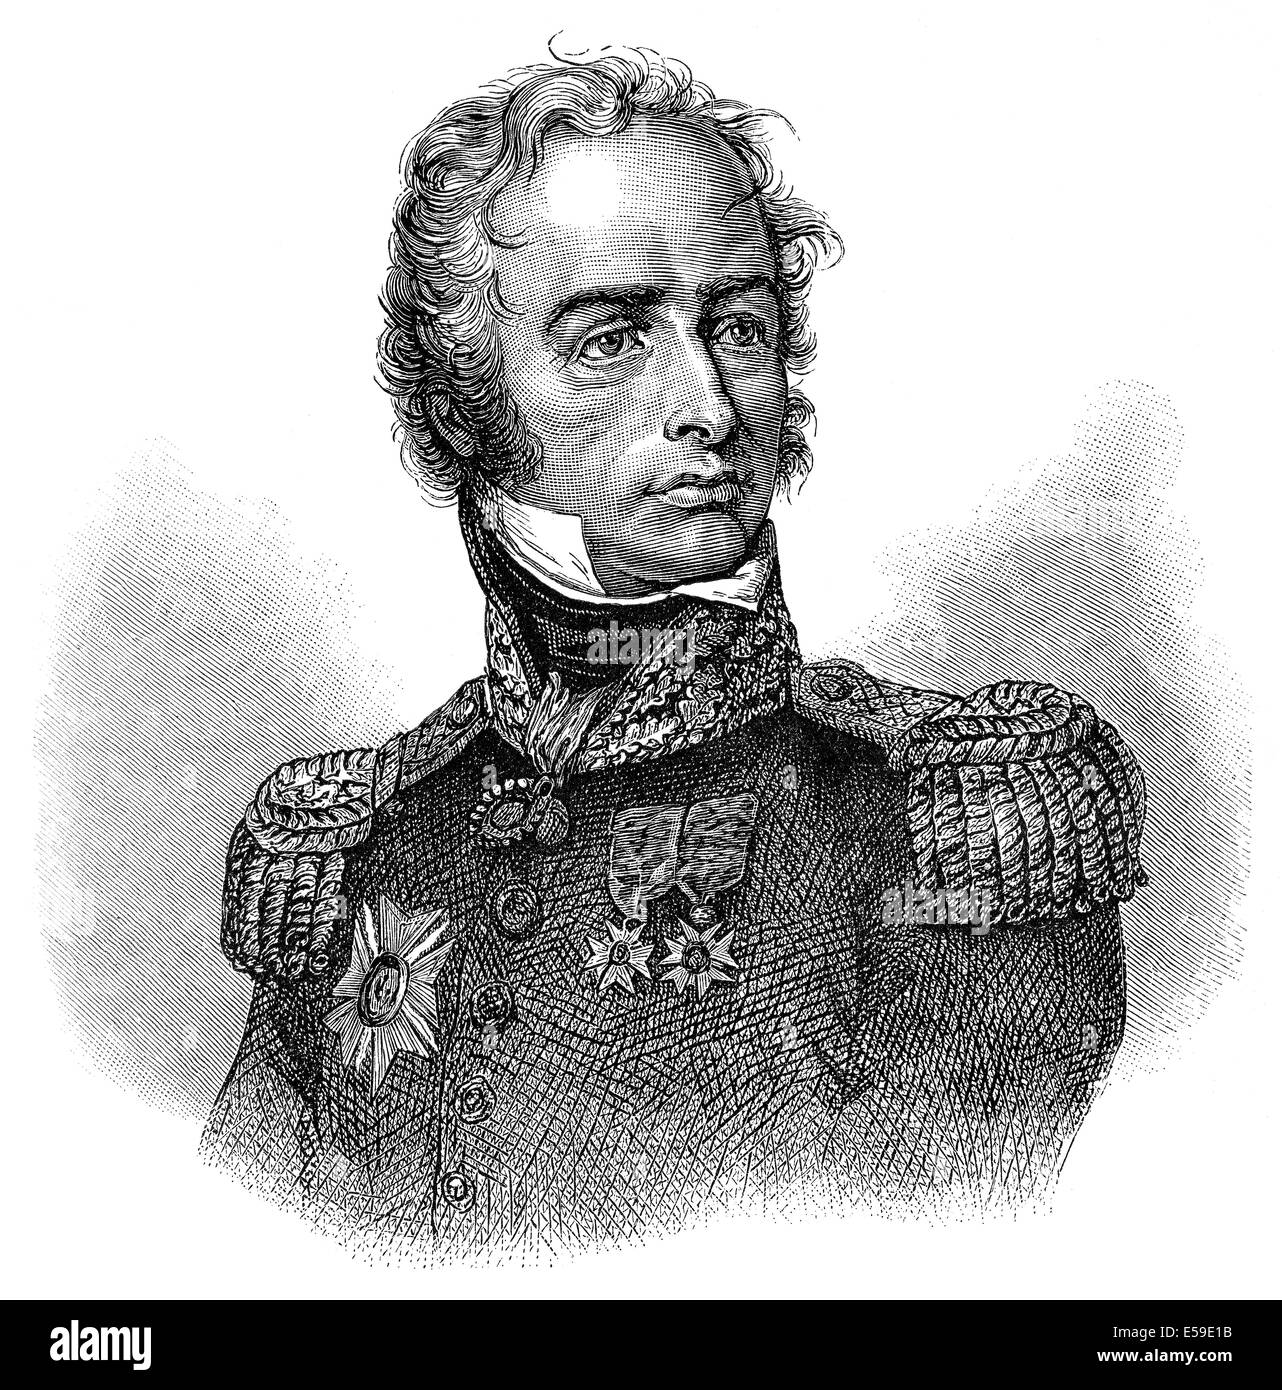 Maximilien Sébastien Foy, 1775-1825, a French military leader, statesman and writer, Maximilien-Sébastien, comte Foy, 1775-1825, Stock Photo